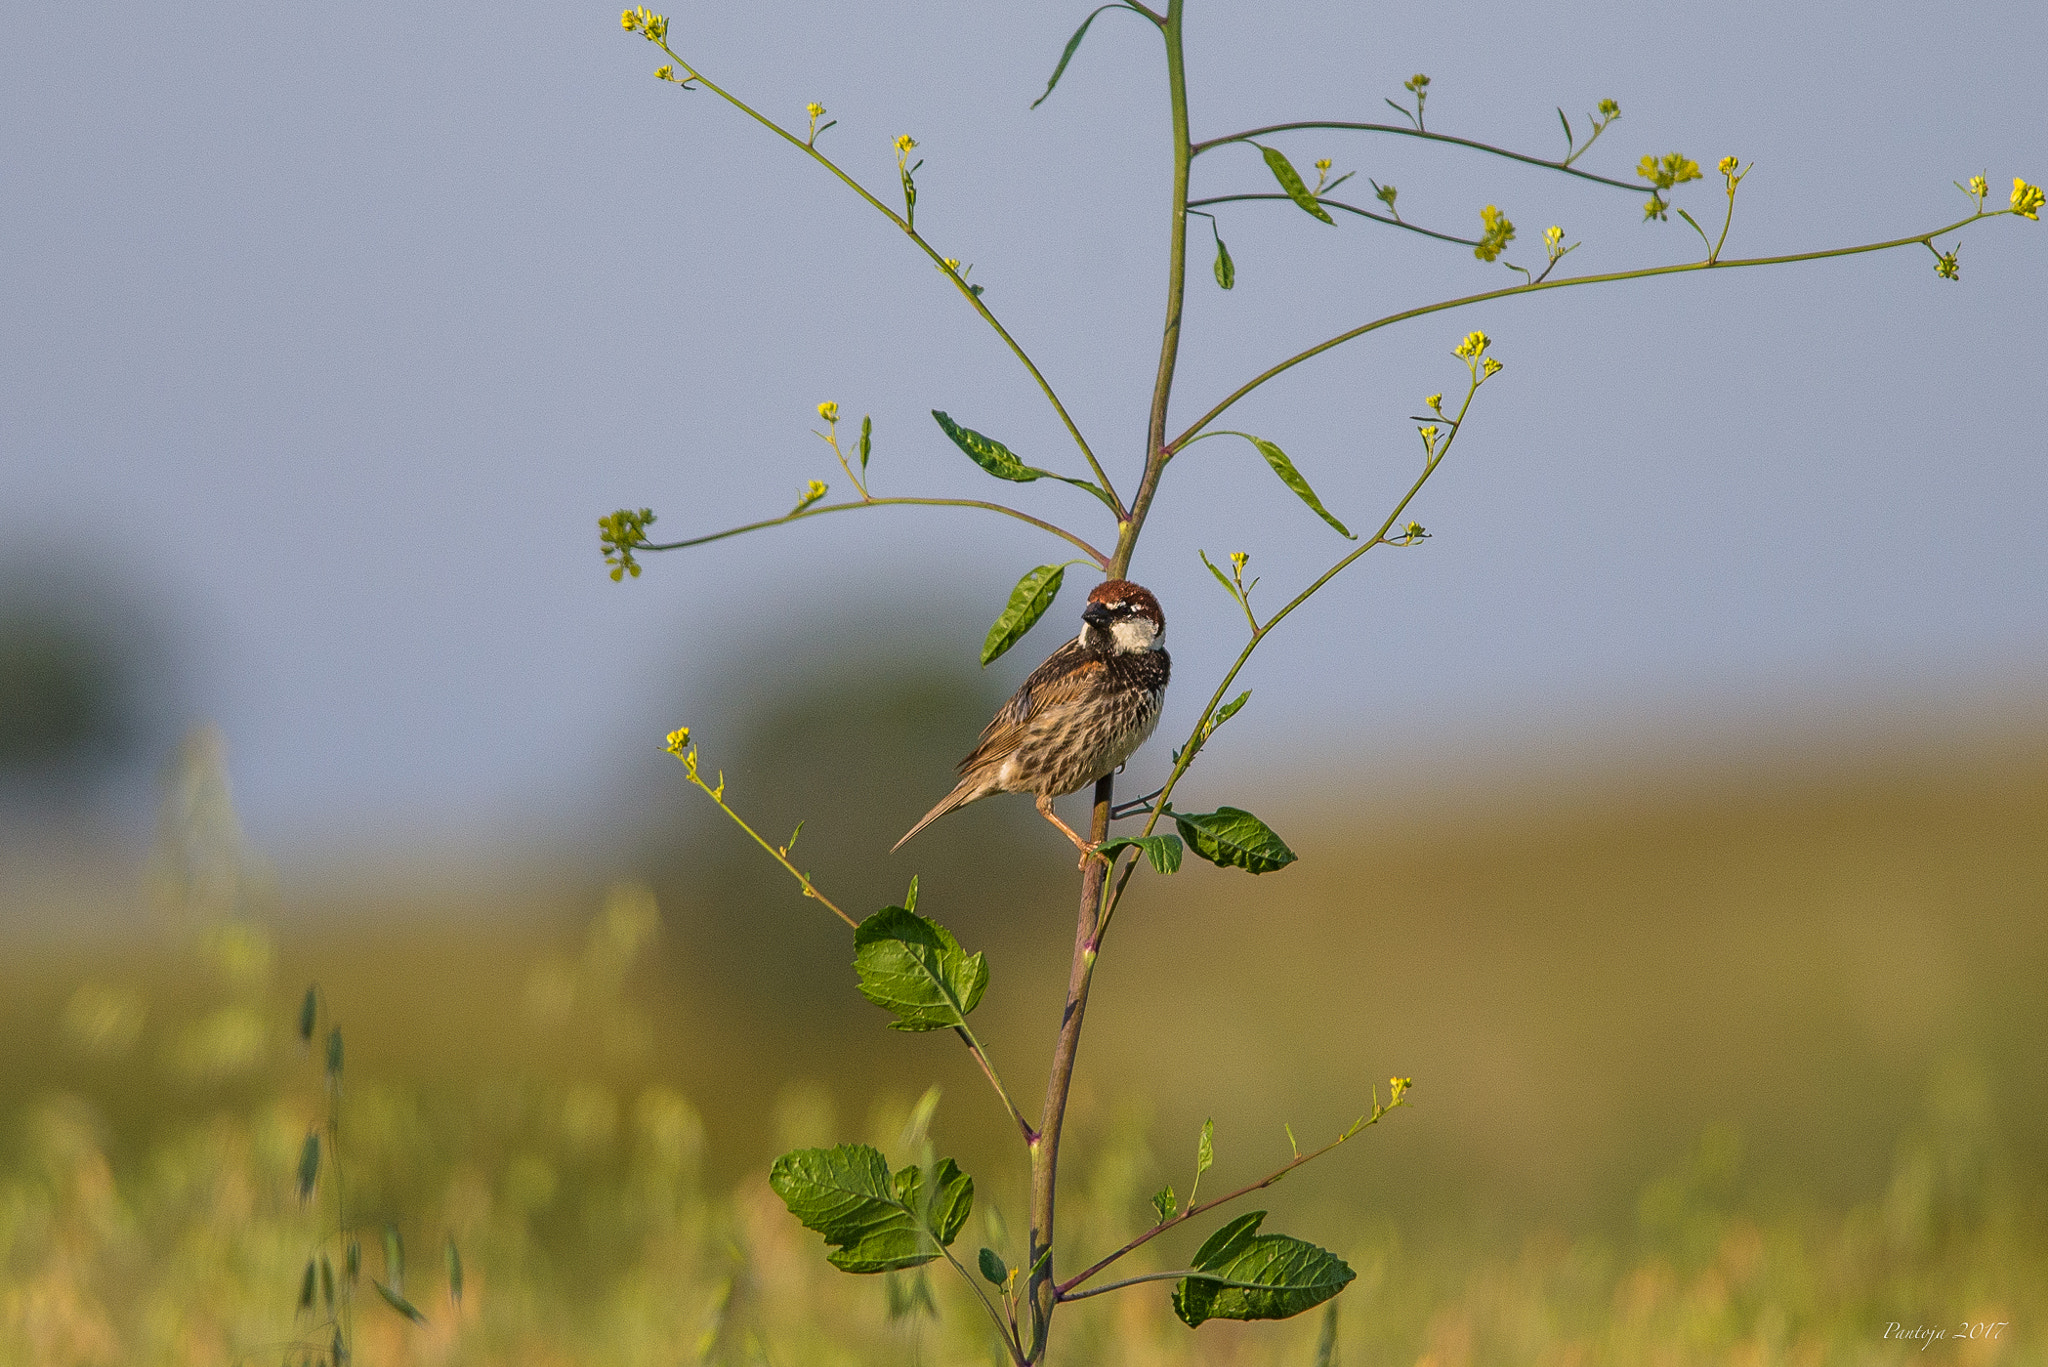 Nikon D600 sample photo. Little bird in little tree photography